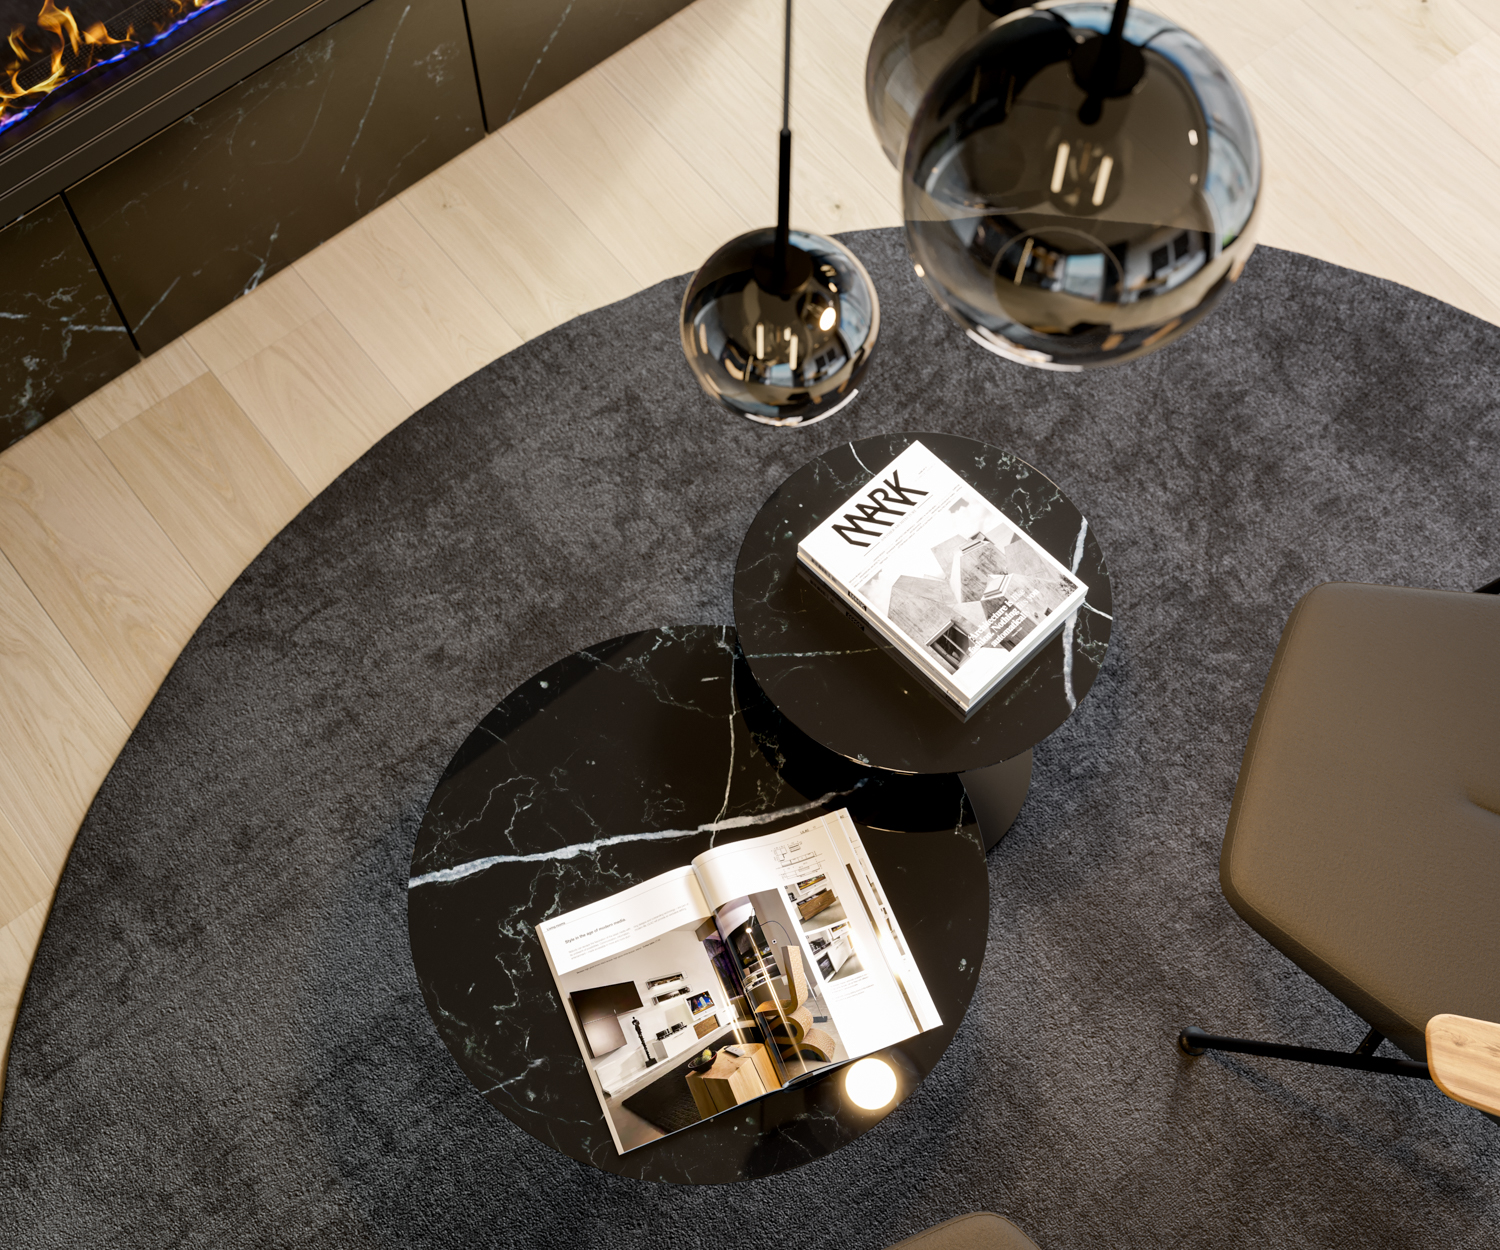 Esclusivo Marelli Tavolino di design Piano del tavolo in vetro break bronzo trasparente